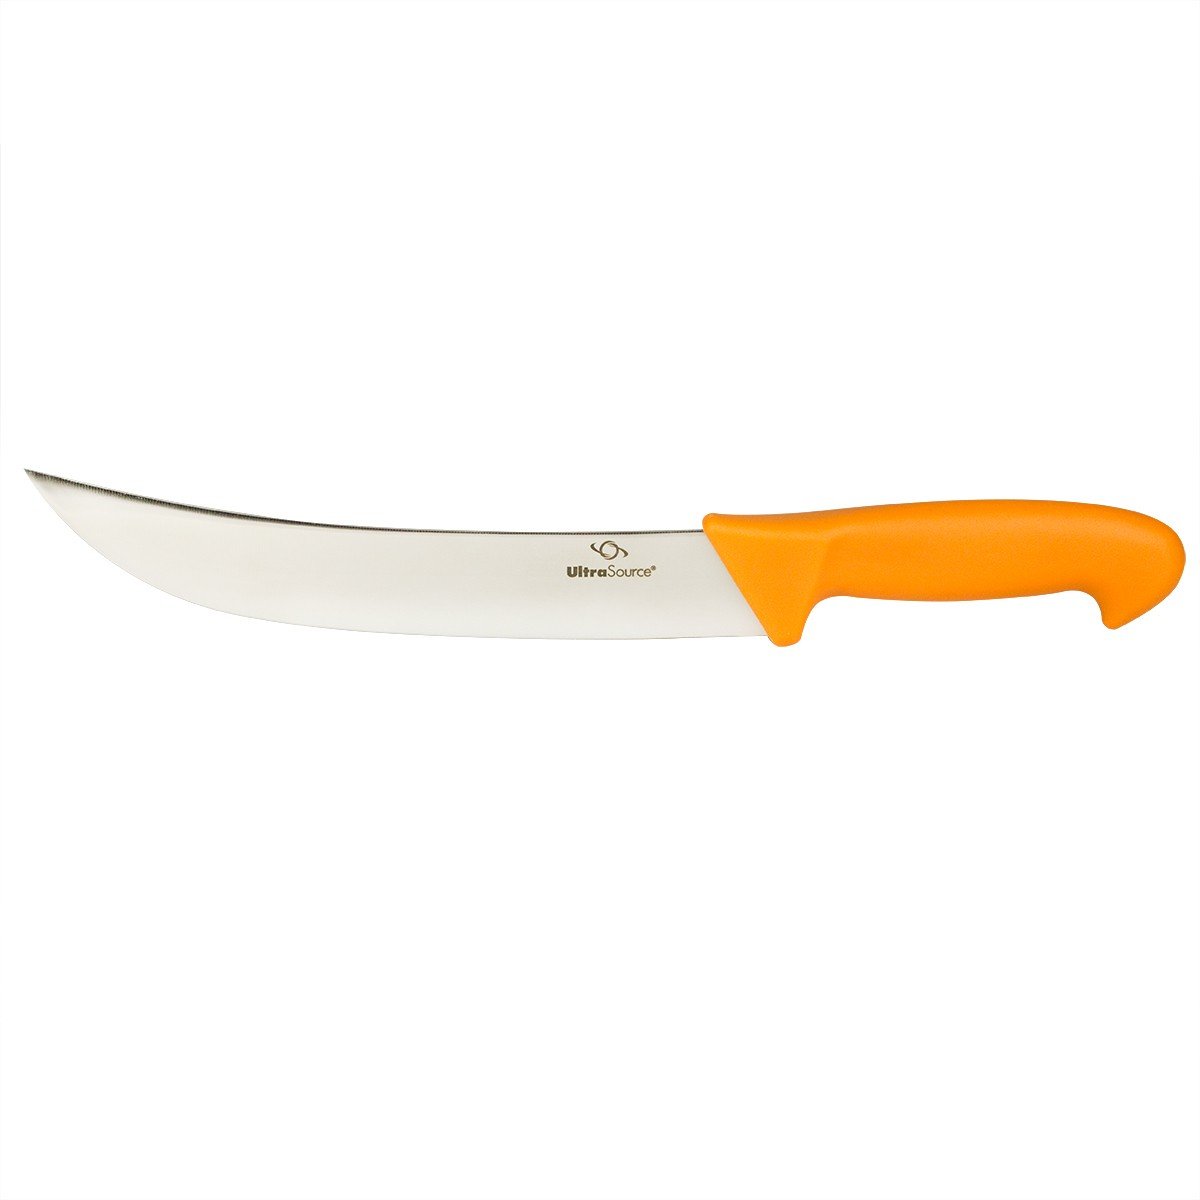 UltraSource 449413 Cimeter Blade Butcher Knife, 10-Inch